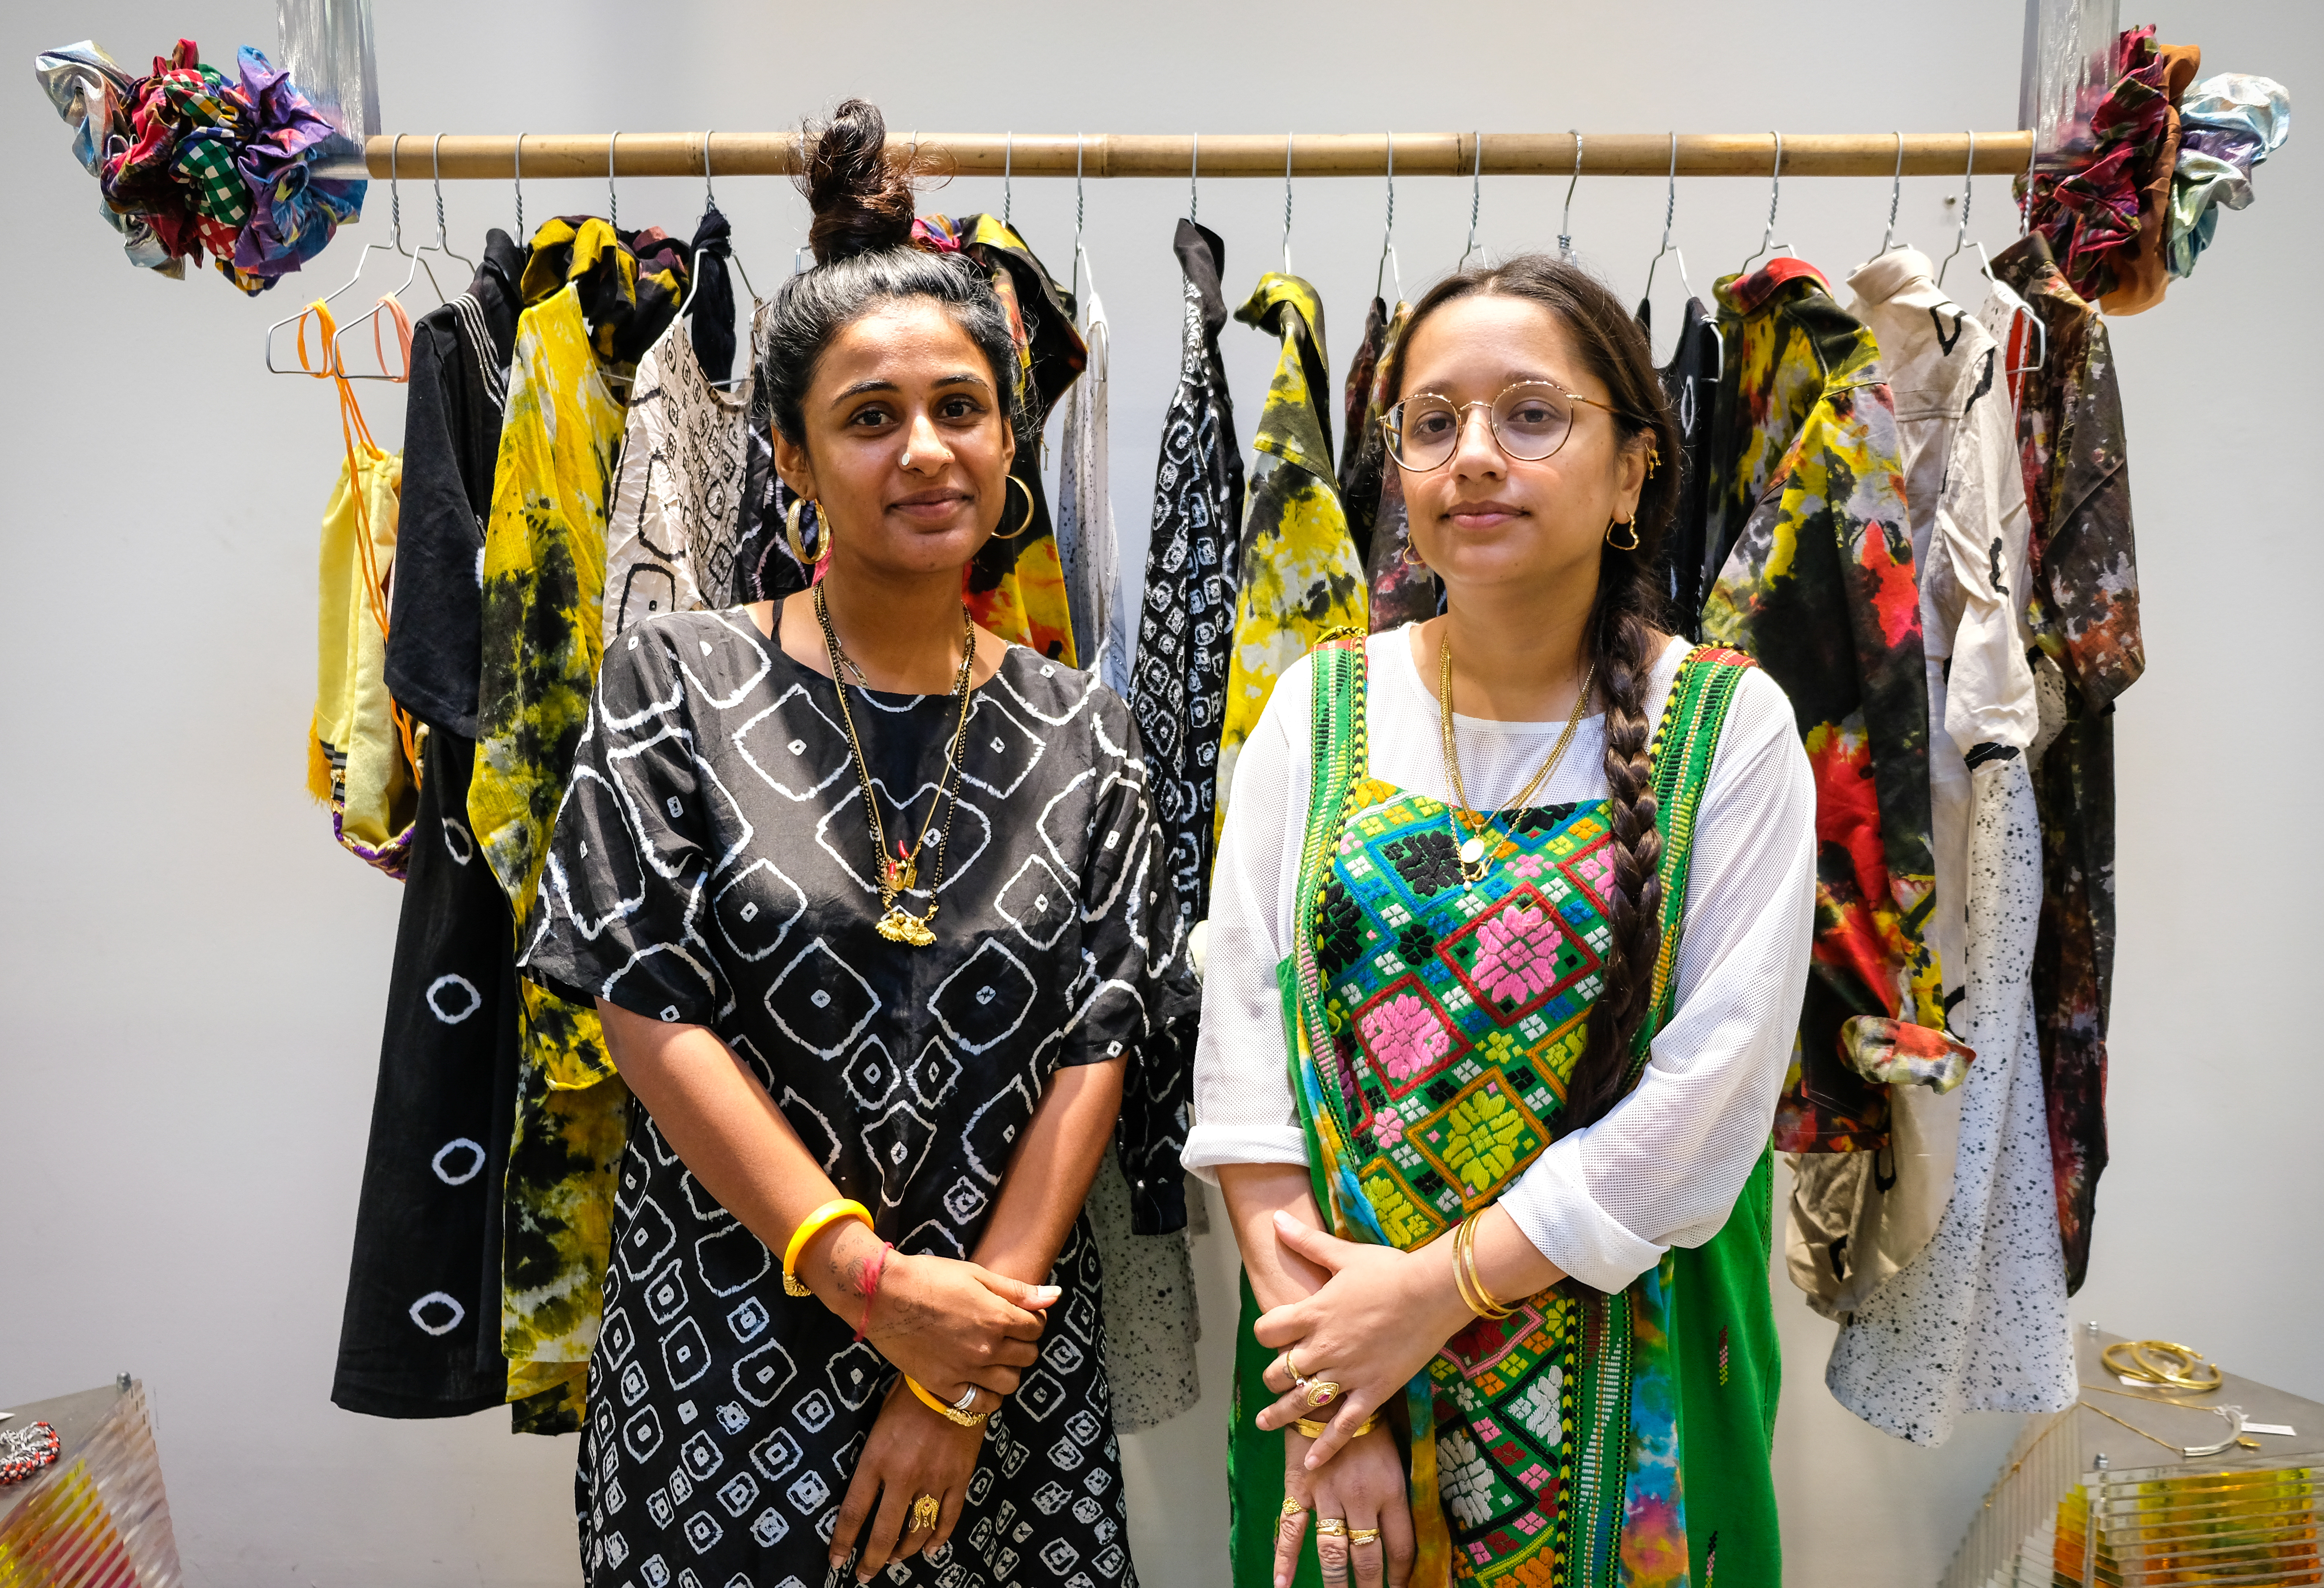 Mriga Kapadiya and Amrit Kumar female founders of NORBLACK NORWHITE clothing brand